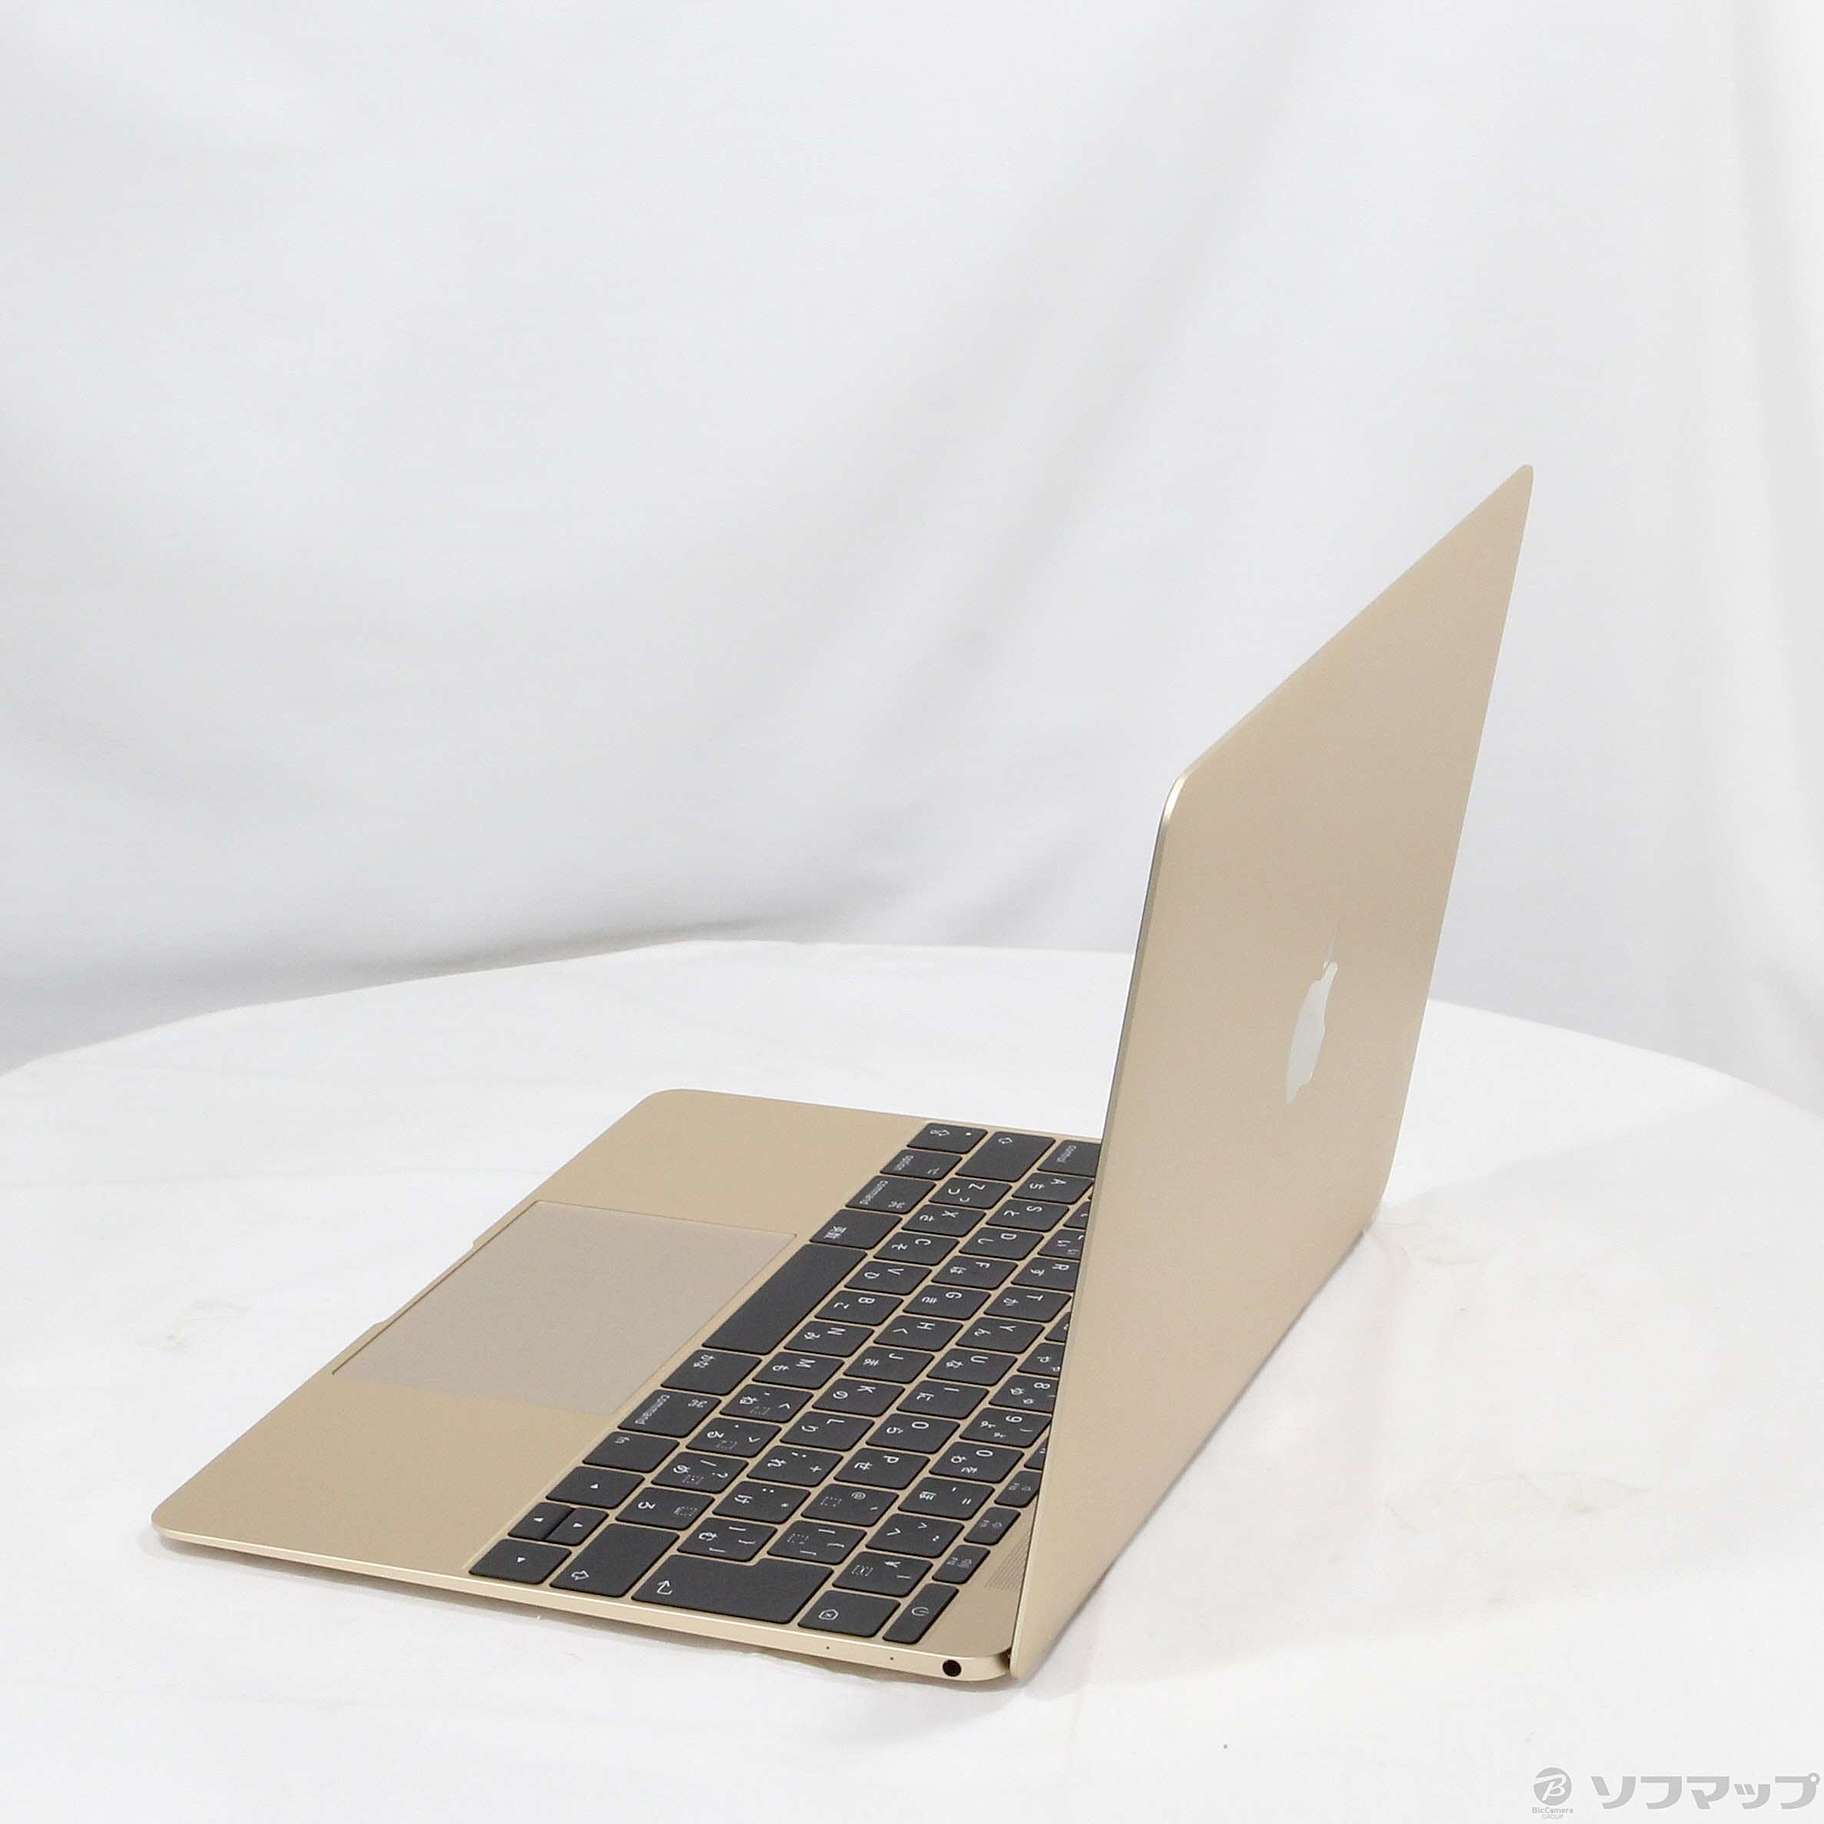 中古品〕 MacBook 12-inch Mid 2017 MNYK2J／A Core_m3 1.2GHz 8GB ...